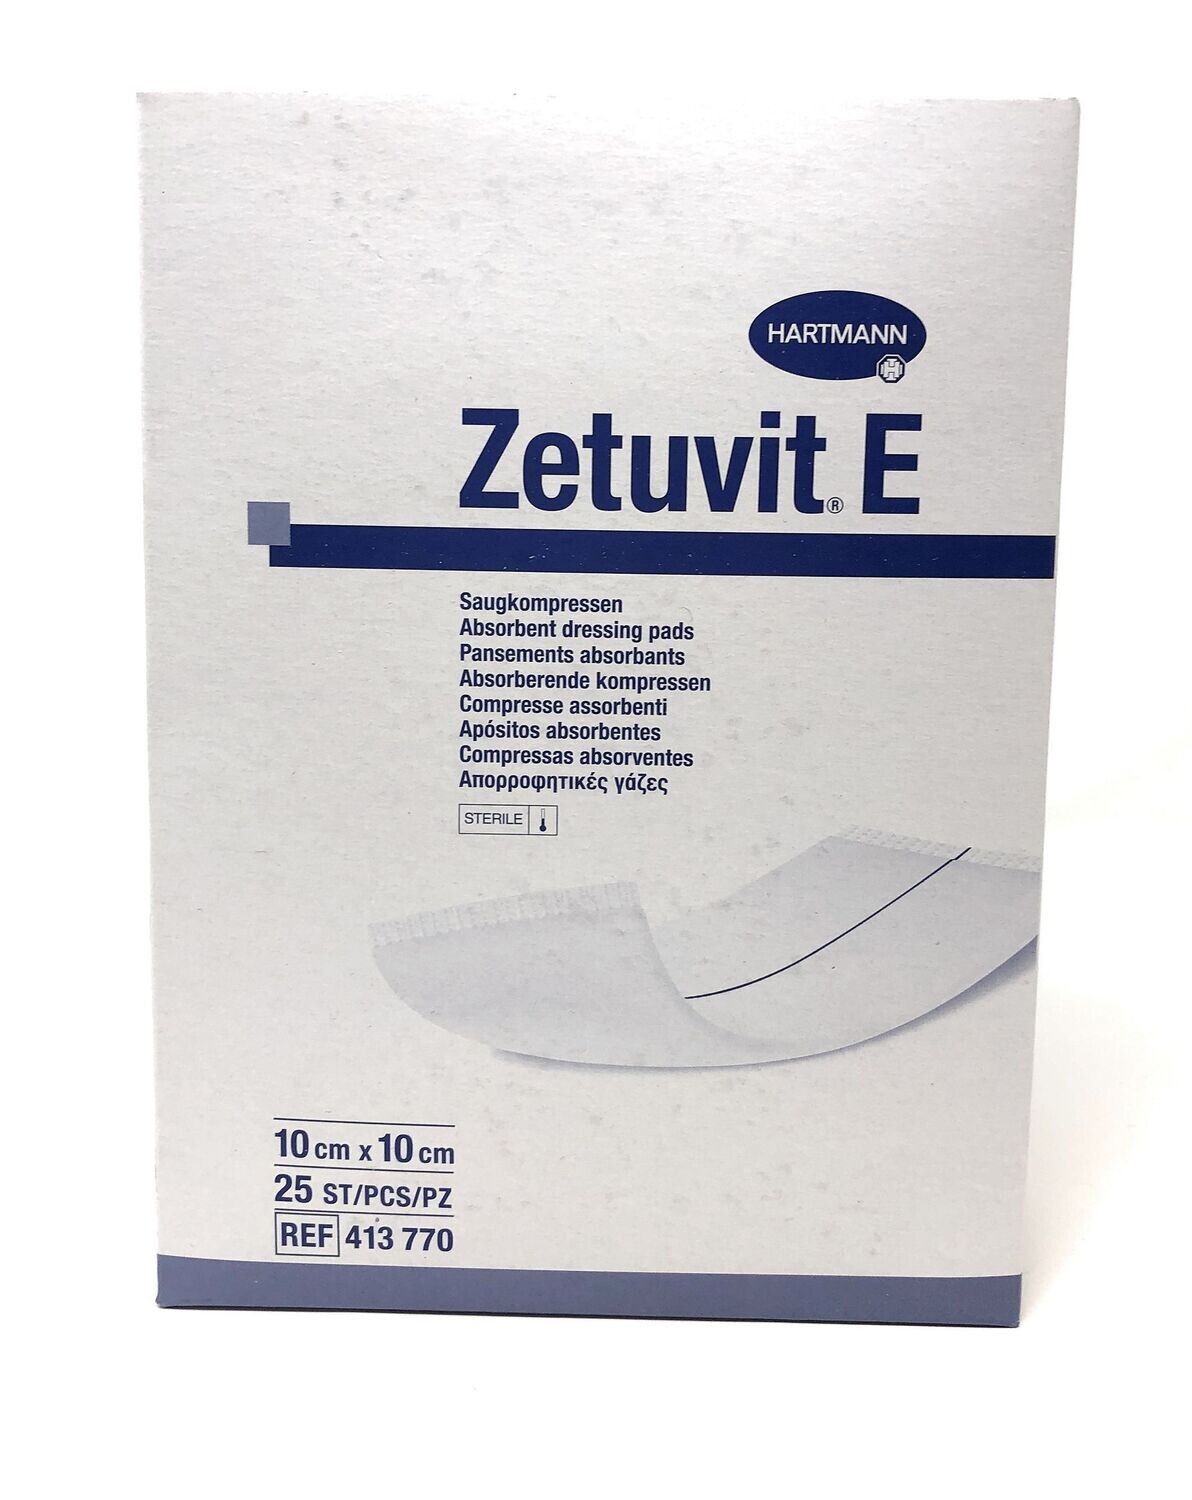 Zetuvit E Saugkompressen steril
10x10cm (25 Stück)